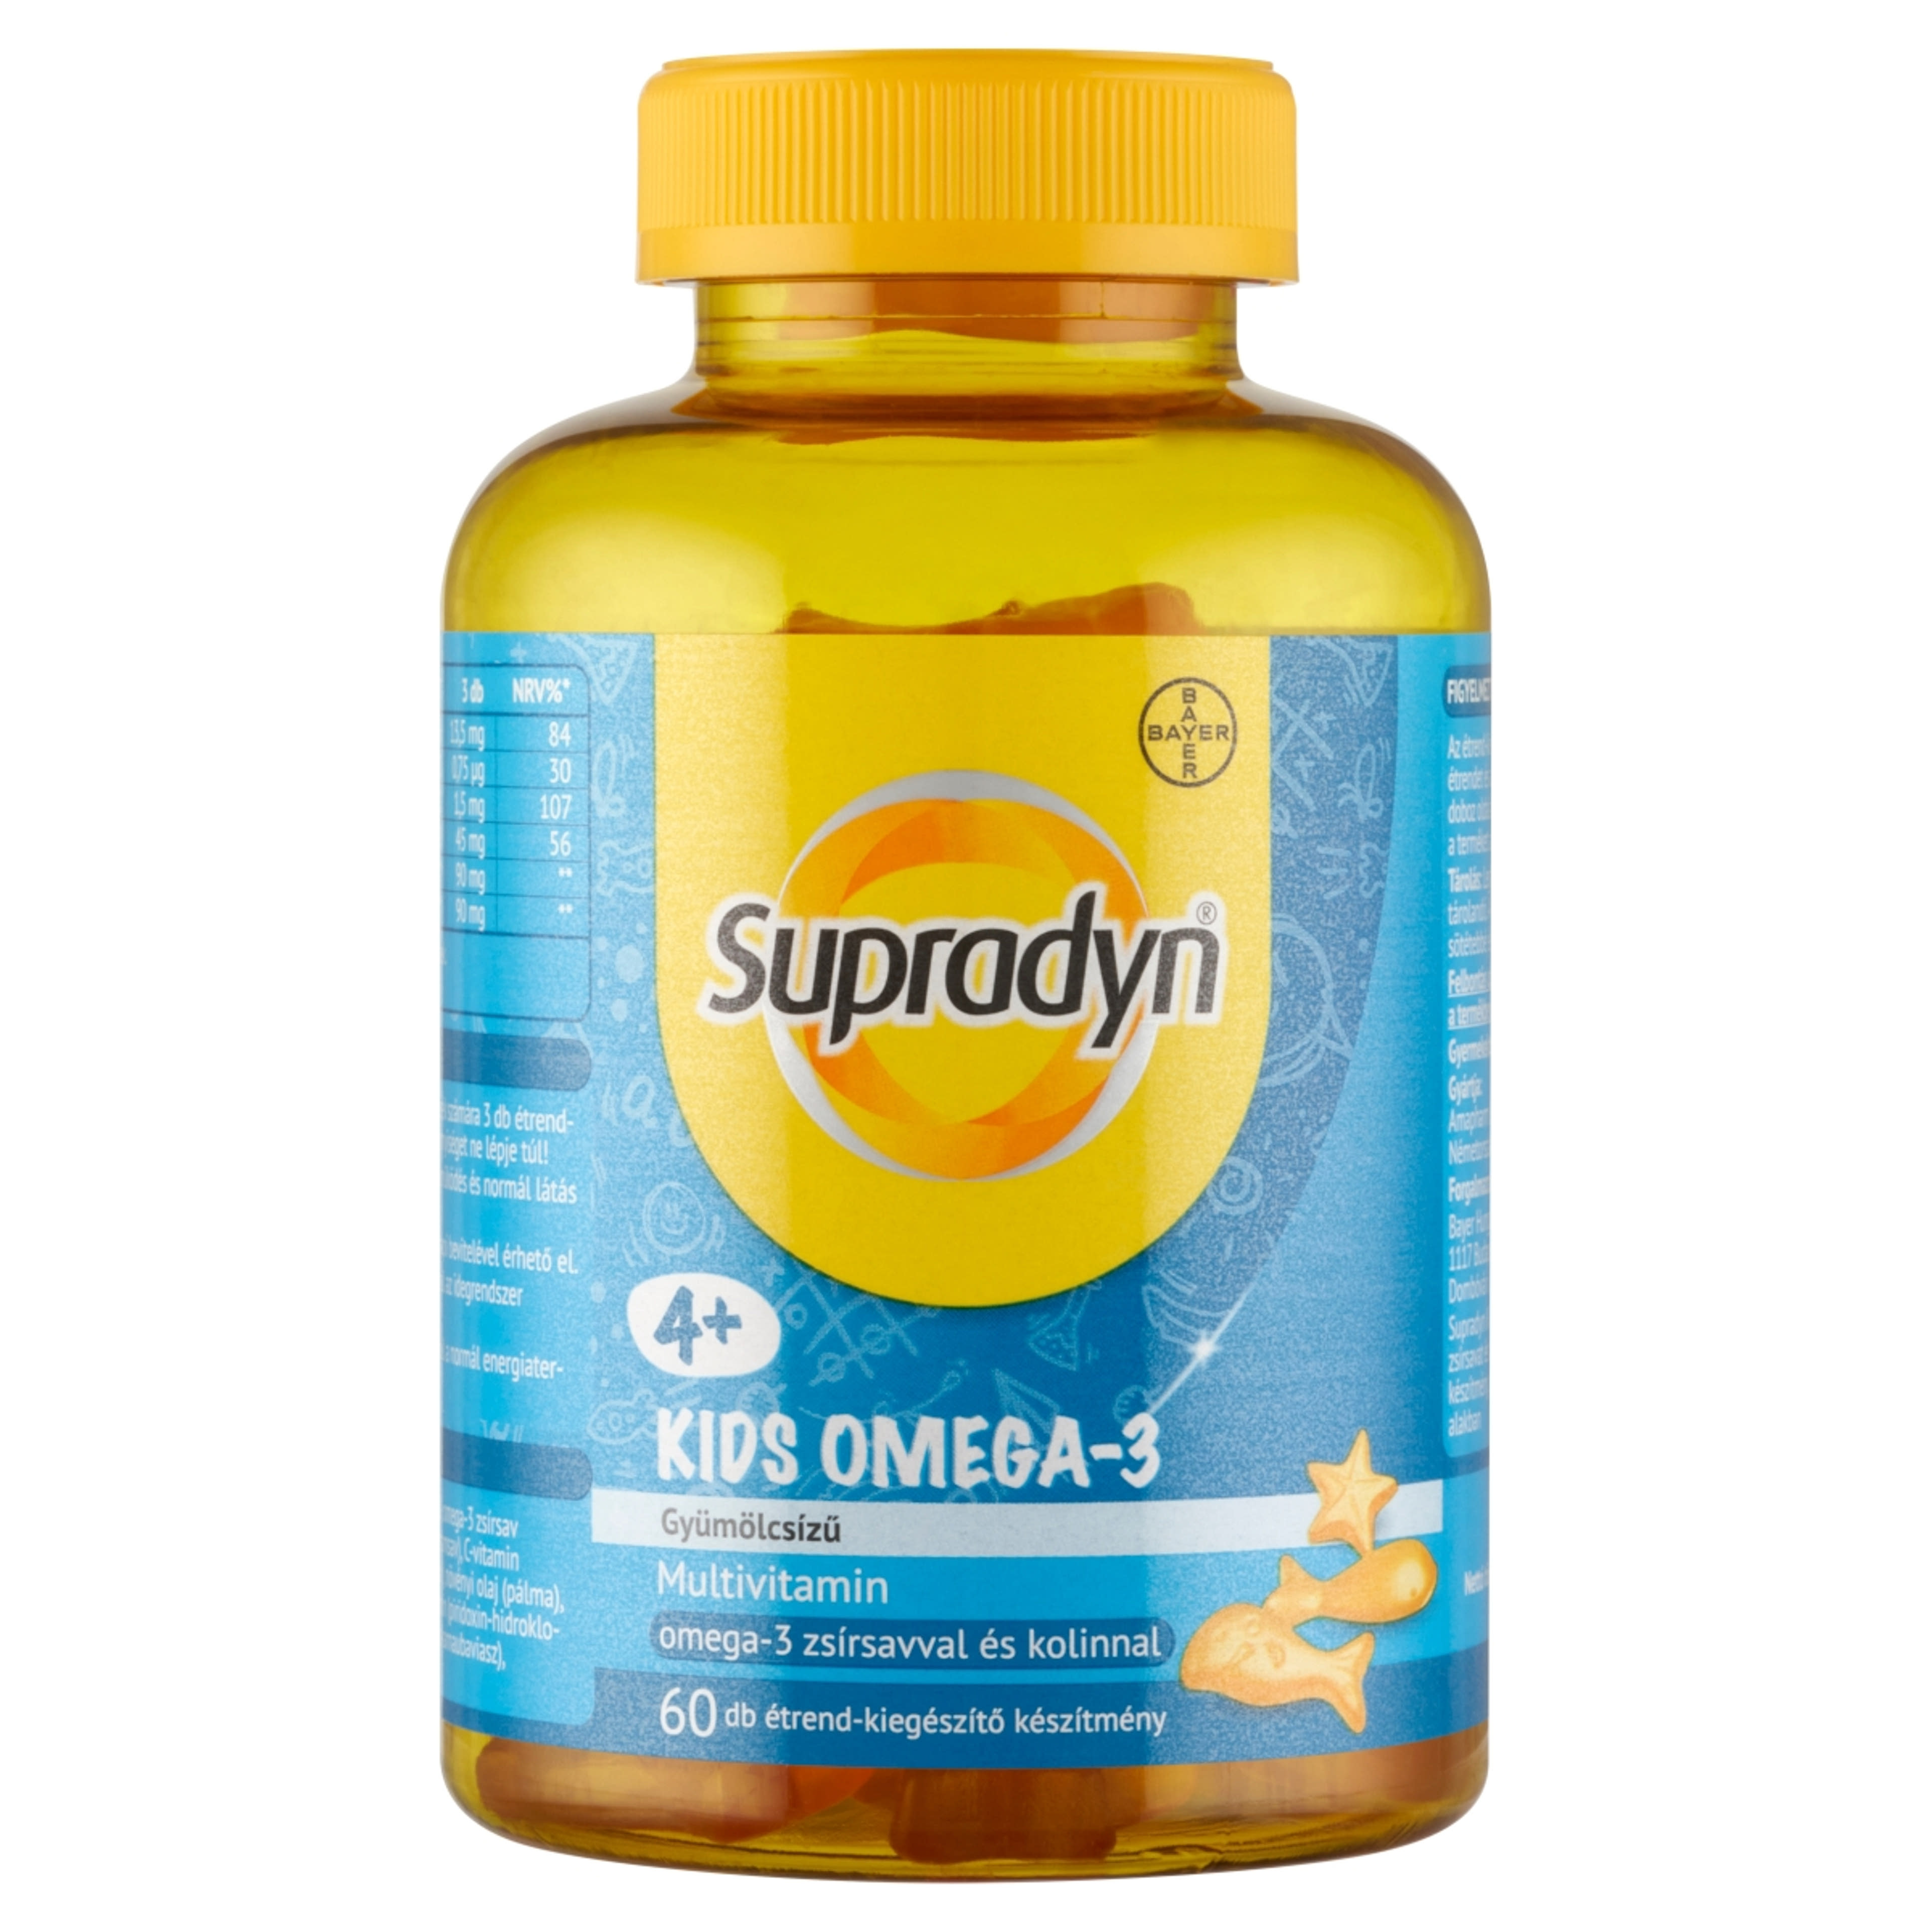 Supradyn Kids gyümölcsízű étrend-kiegészítő multivitamin omega-3-mal és kolinnal - 60 db-1